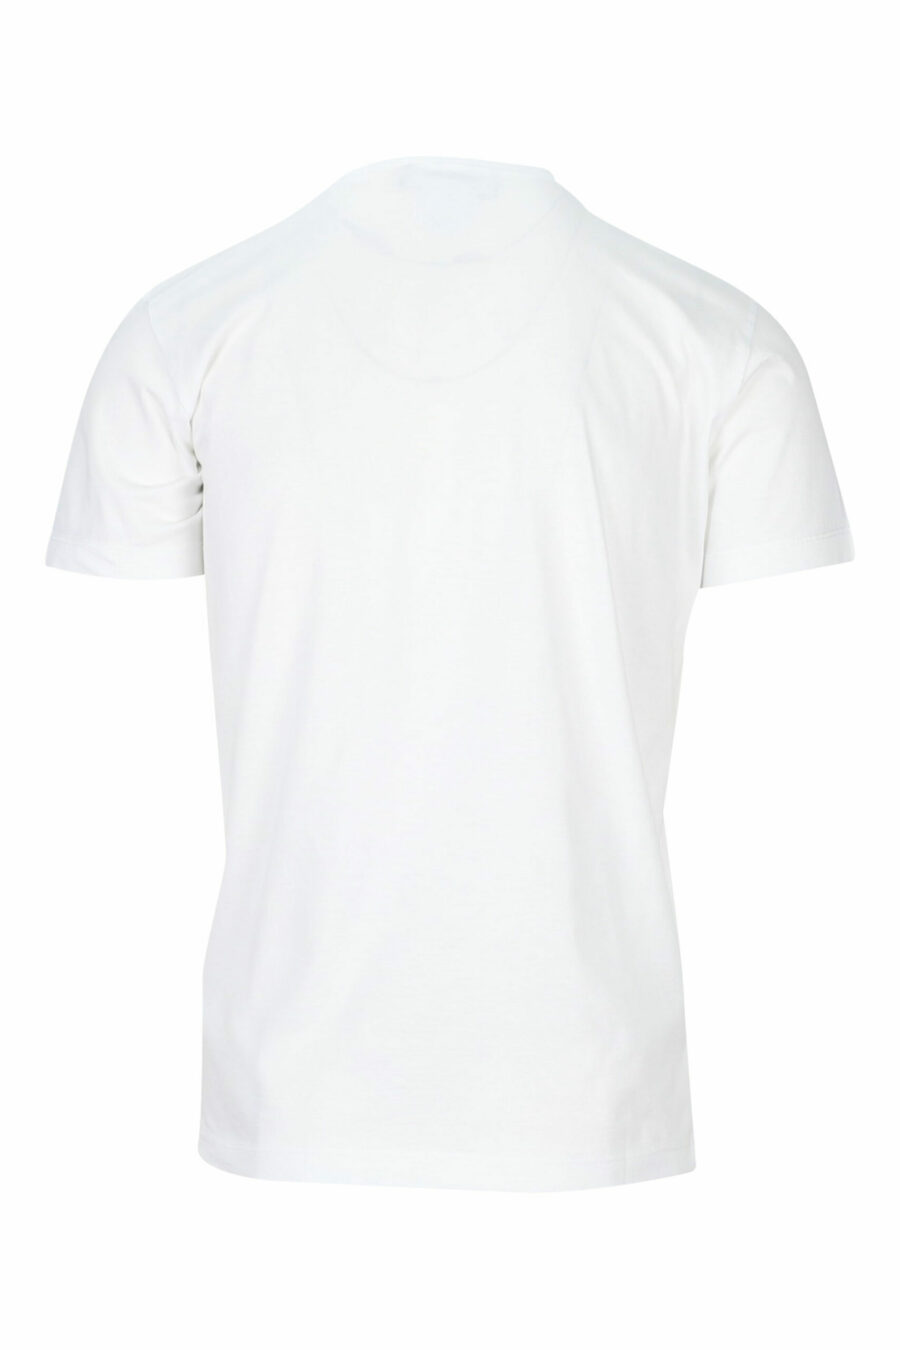 Weißes T-Shirt mit weißem und blauem Maxilogo mit Schild - 8054148159665 1 skaliert